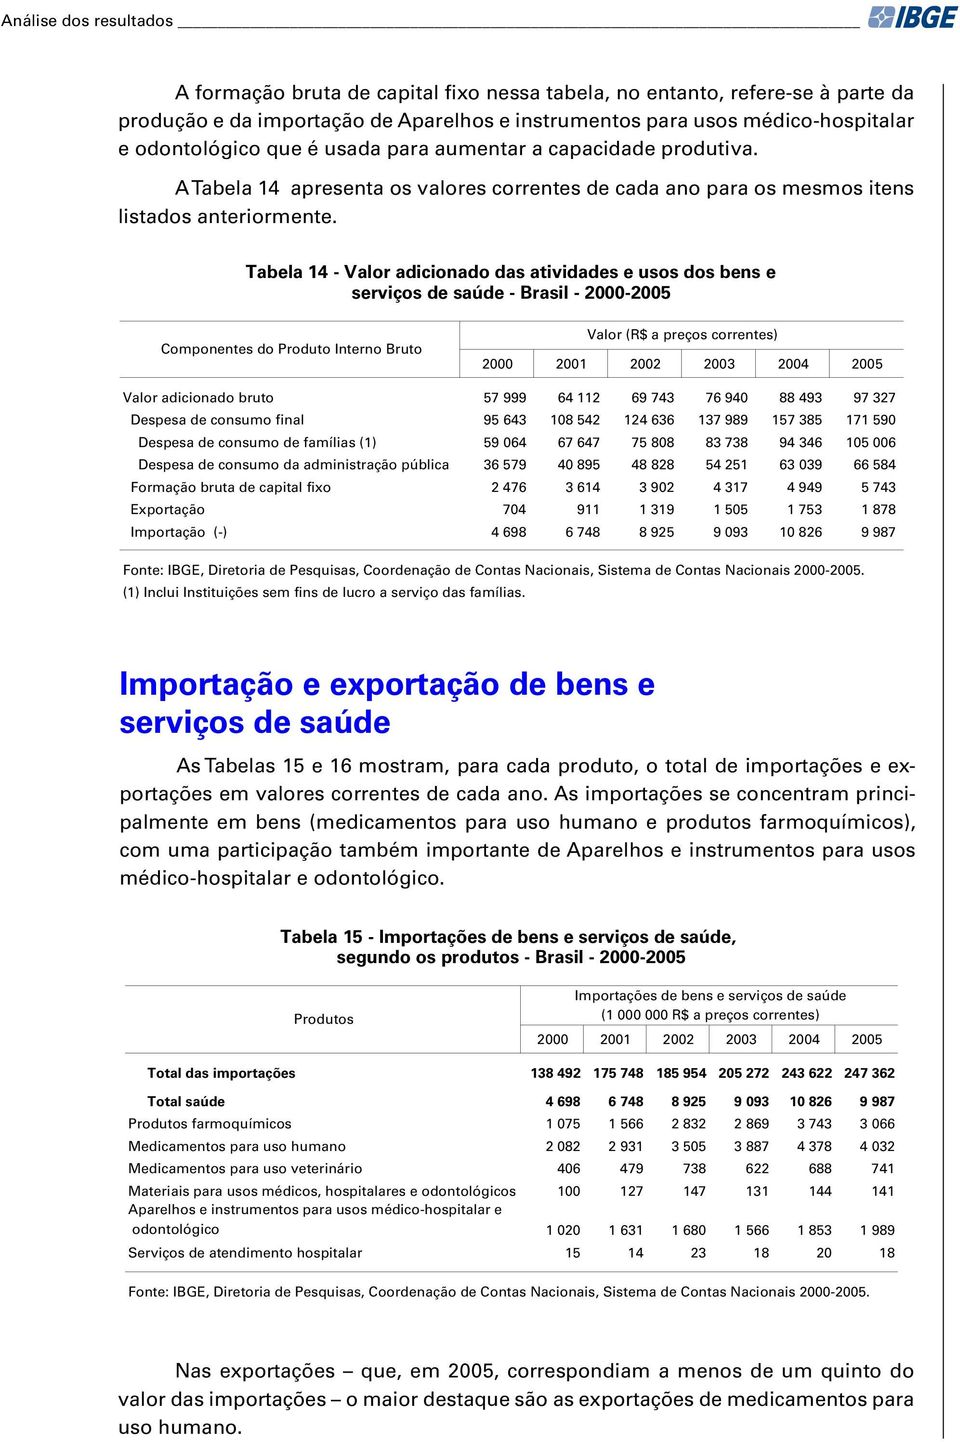 Tabela 14 - Valor adicionado das atividades e usos dos bens e serviços de saúde - Brasil - 2000-2005 Componentes do Produto Interno Bruto Valor (R$ a preços correntes) 2000 2001 2002 2003 2004 2005